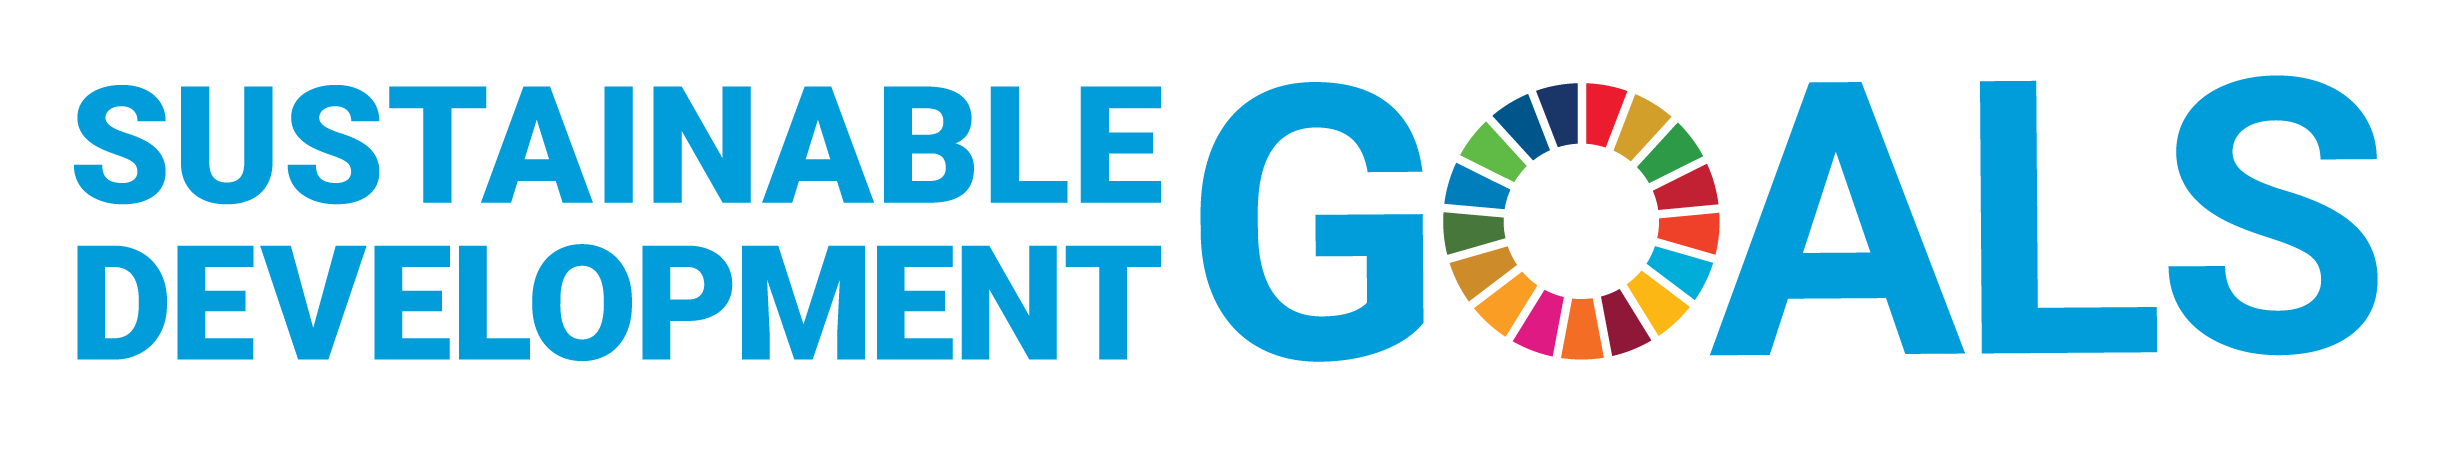 UN Sustainability Development Goals logo